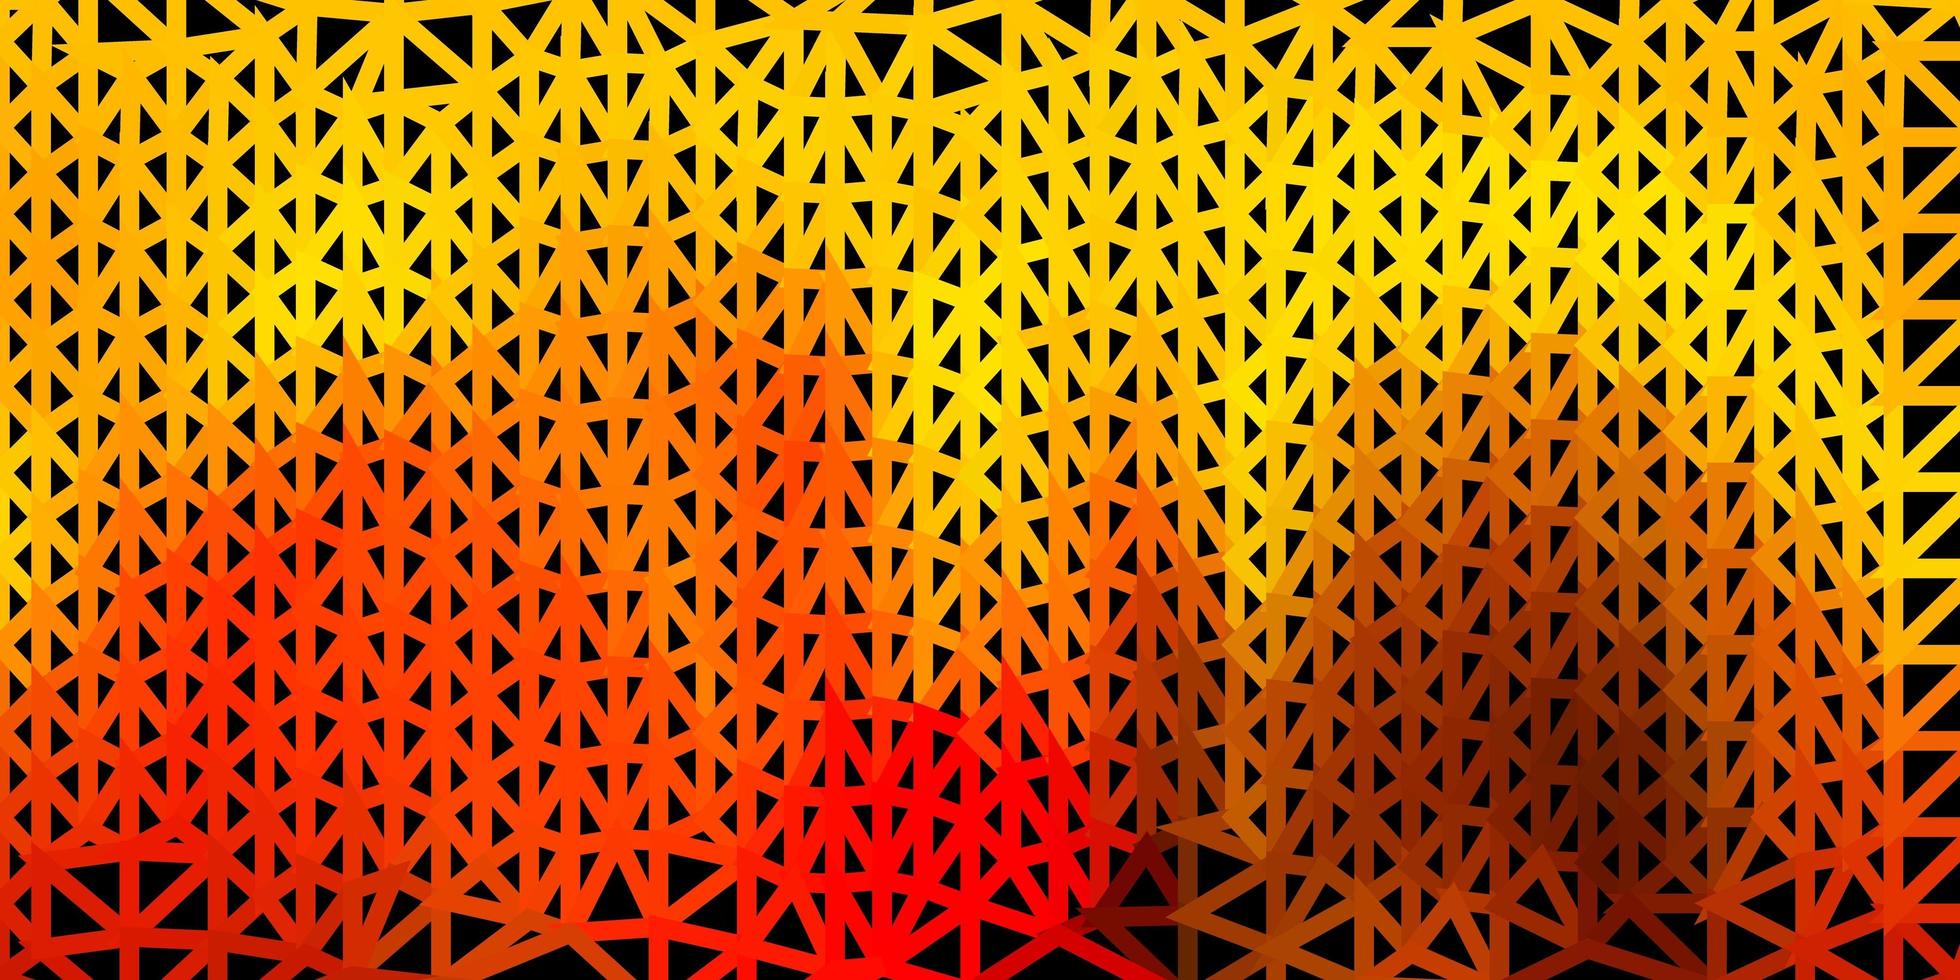 fond d'écran polygonale géométrique vecteur rouge clair, jaune.